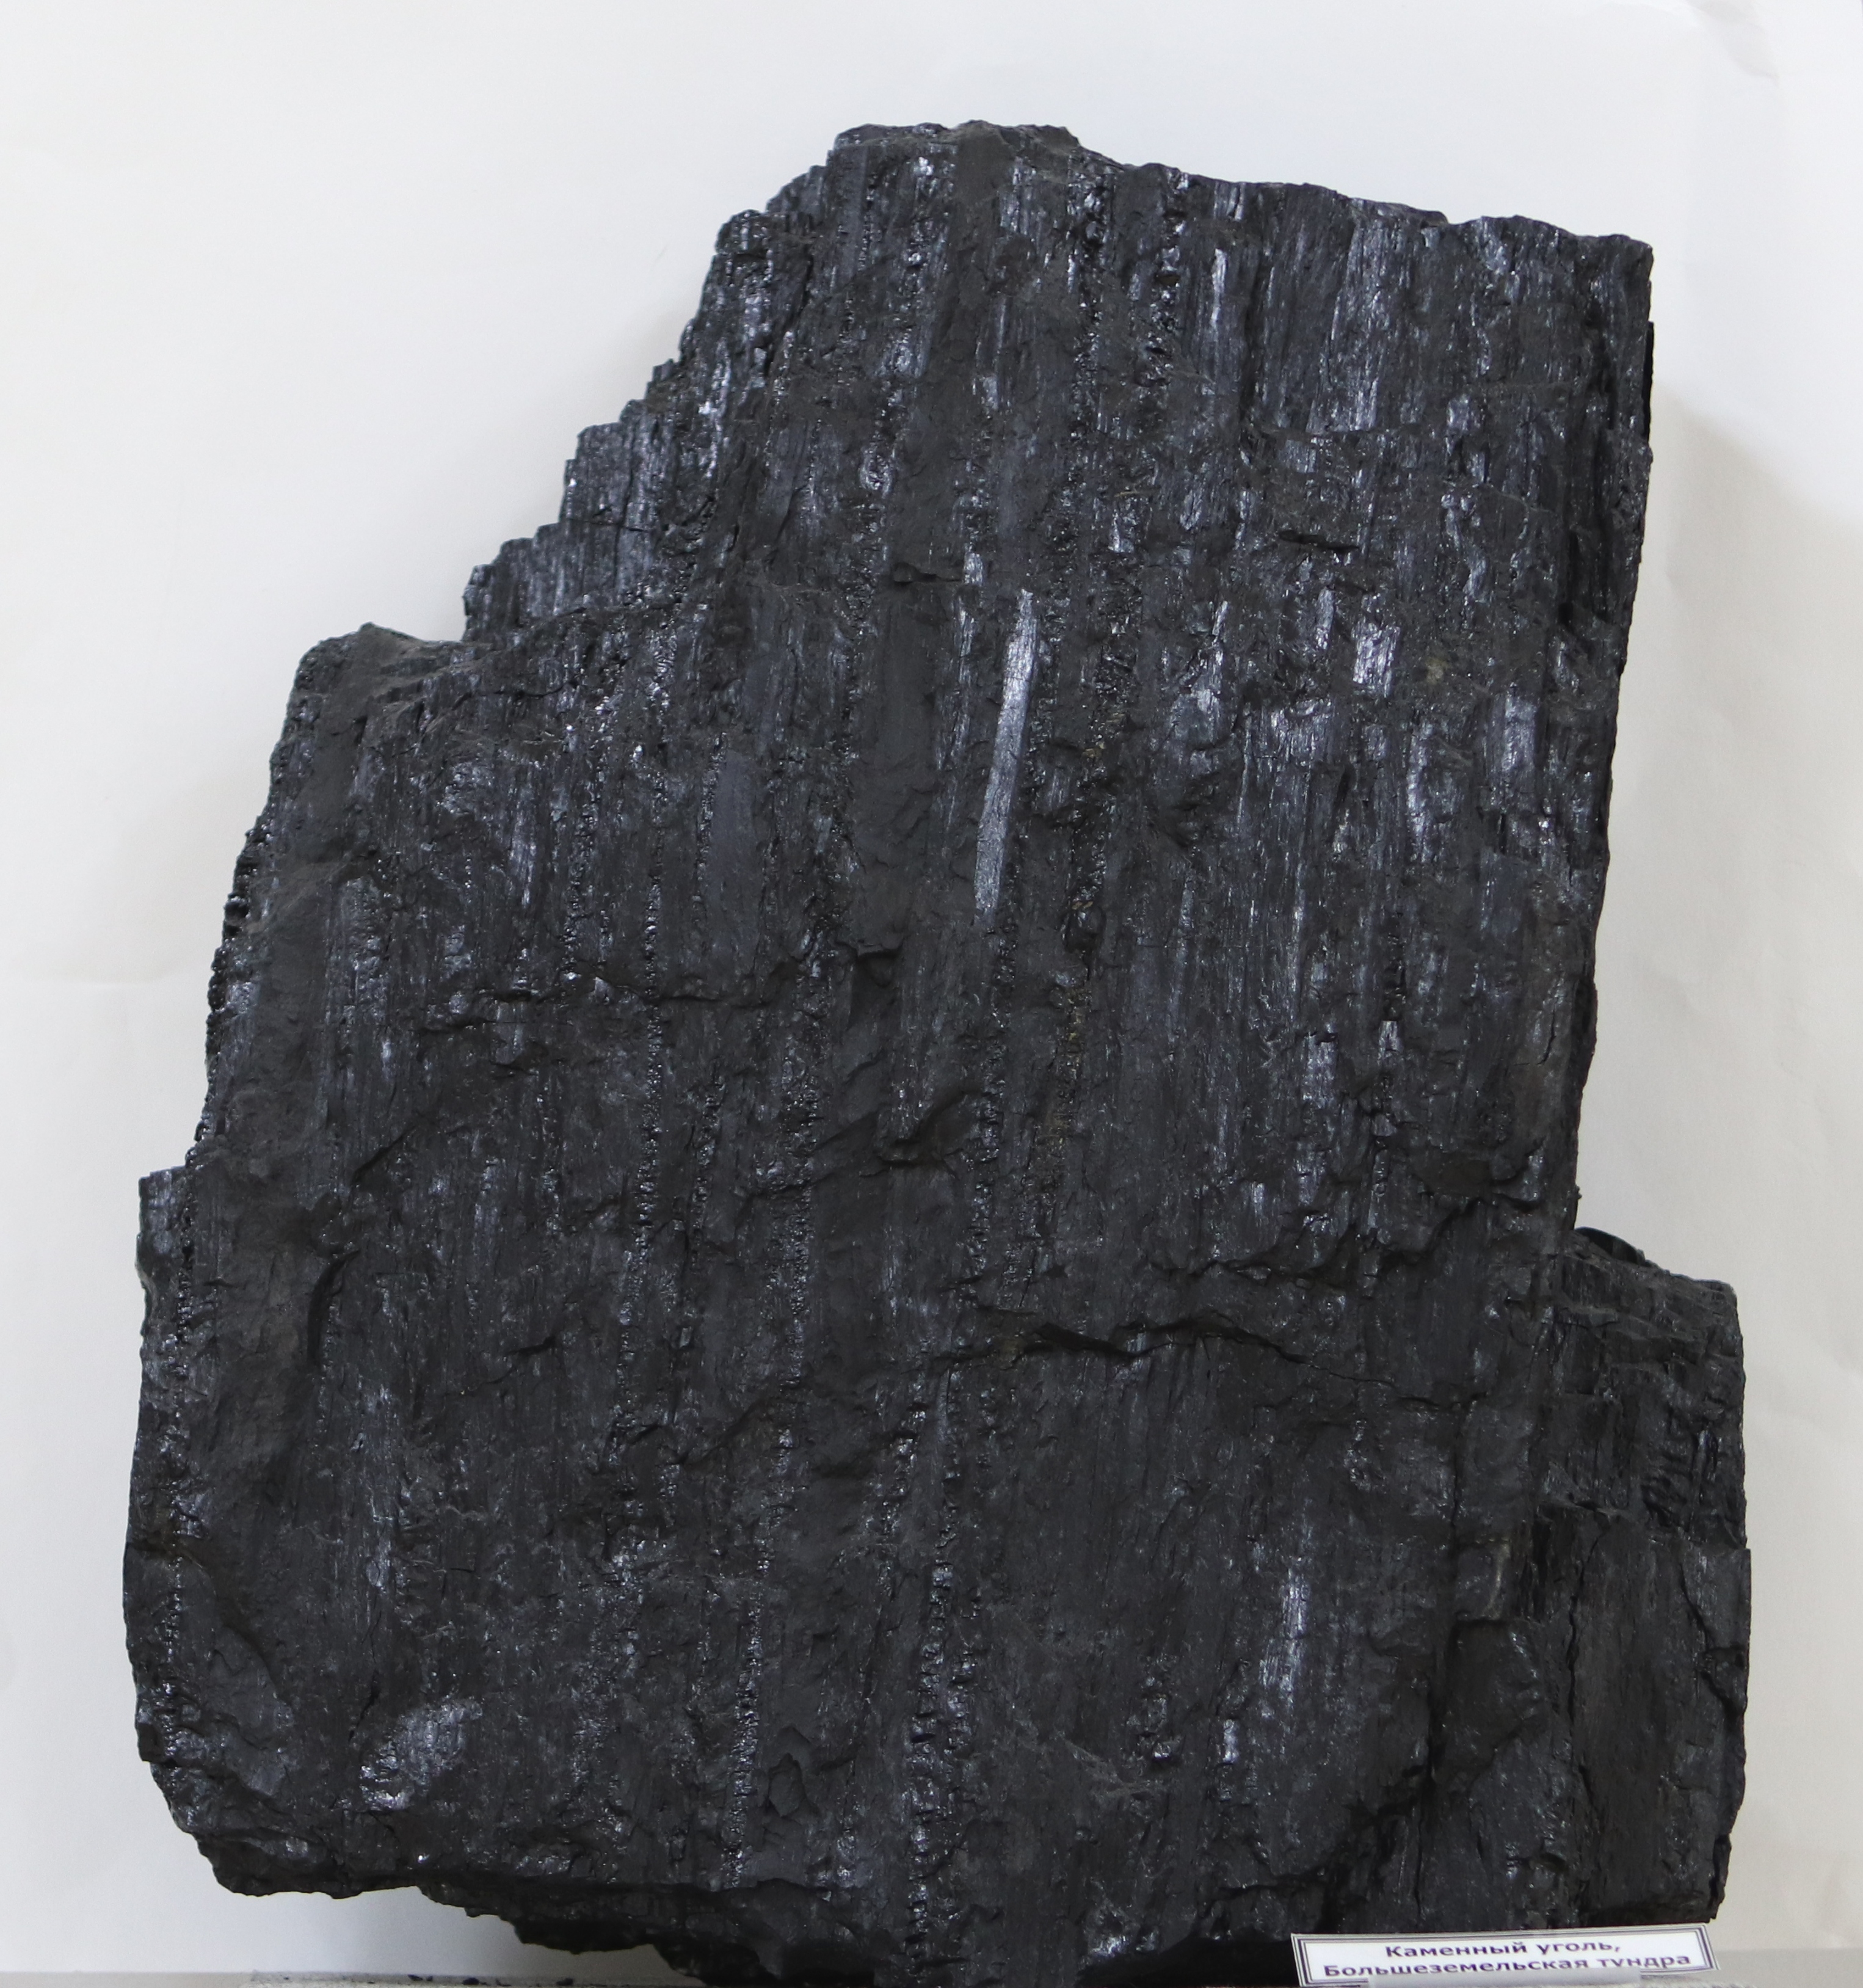 Каменный уголь 